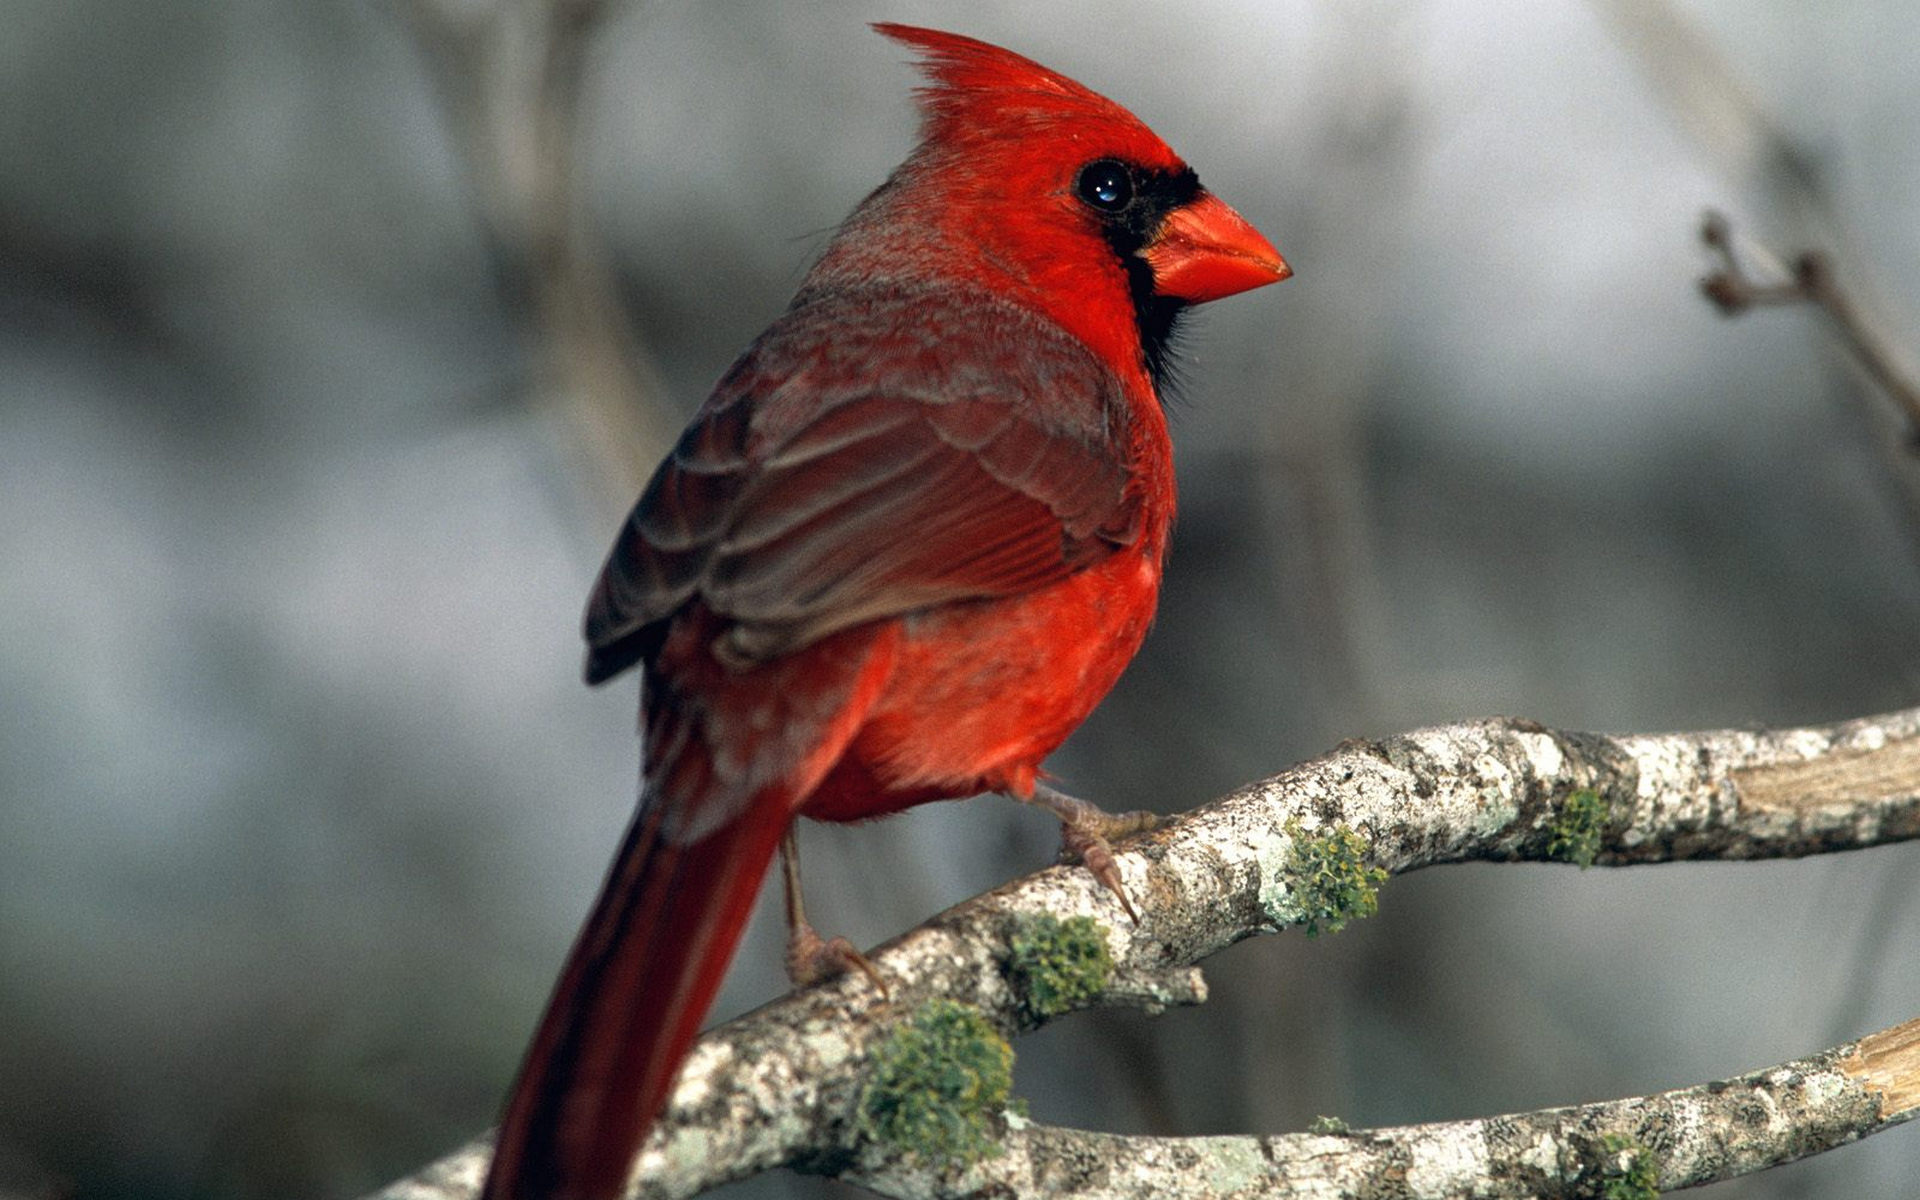 Free download wallpaper Animal, Cardinal on your PC desktop